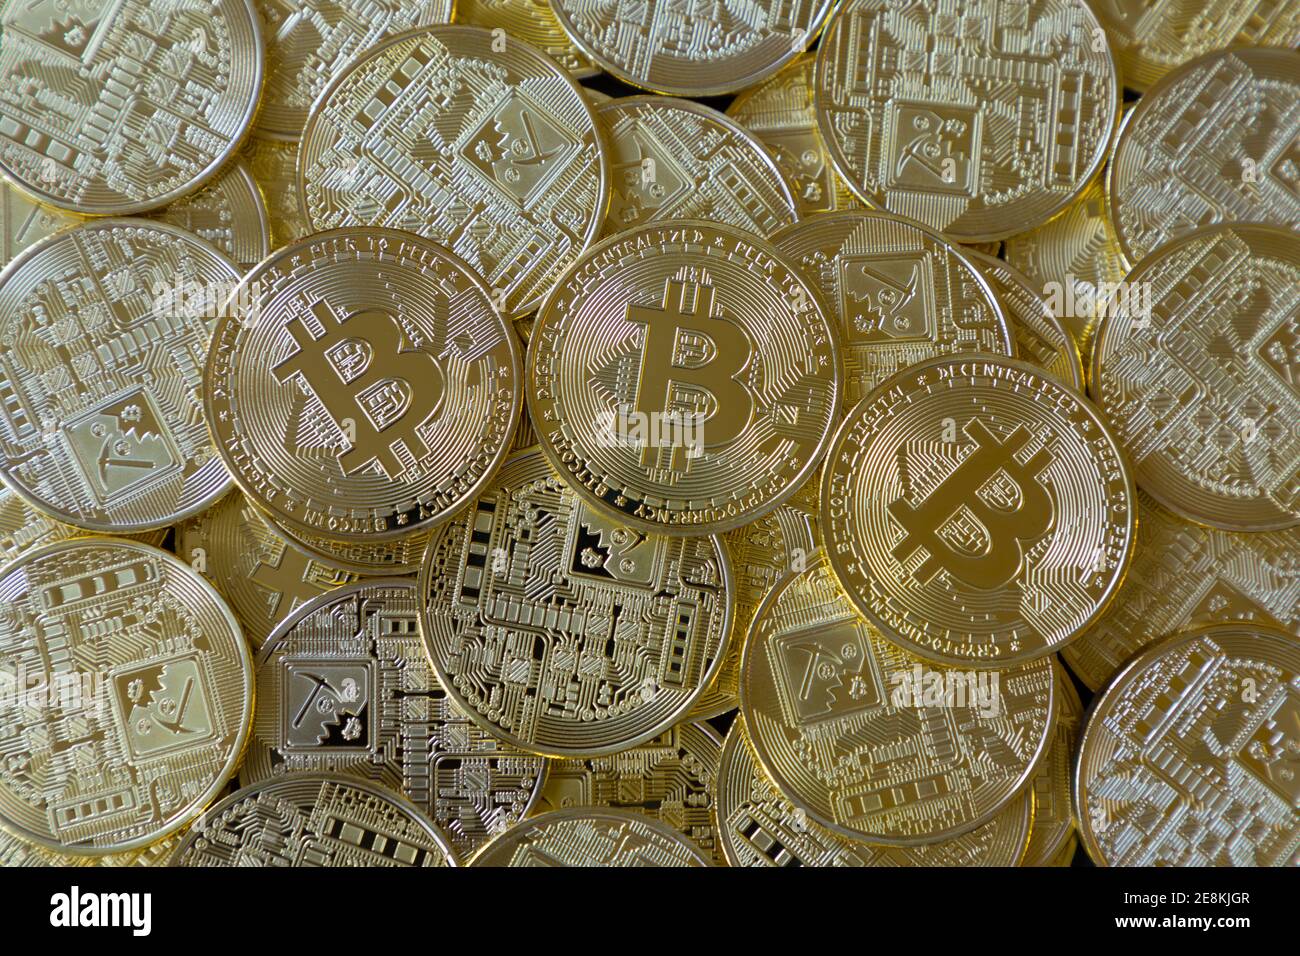 Ein Haufen von vielen goldenen Bitcoins. Kryptowährung Konzept Stockfoto